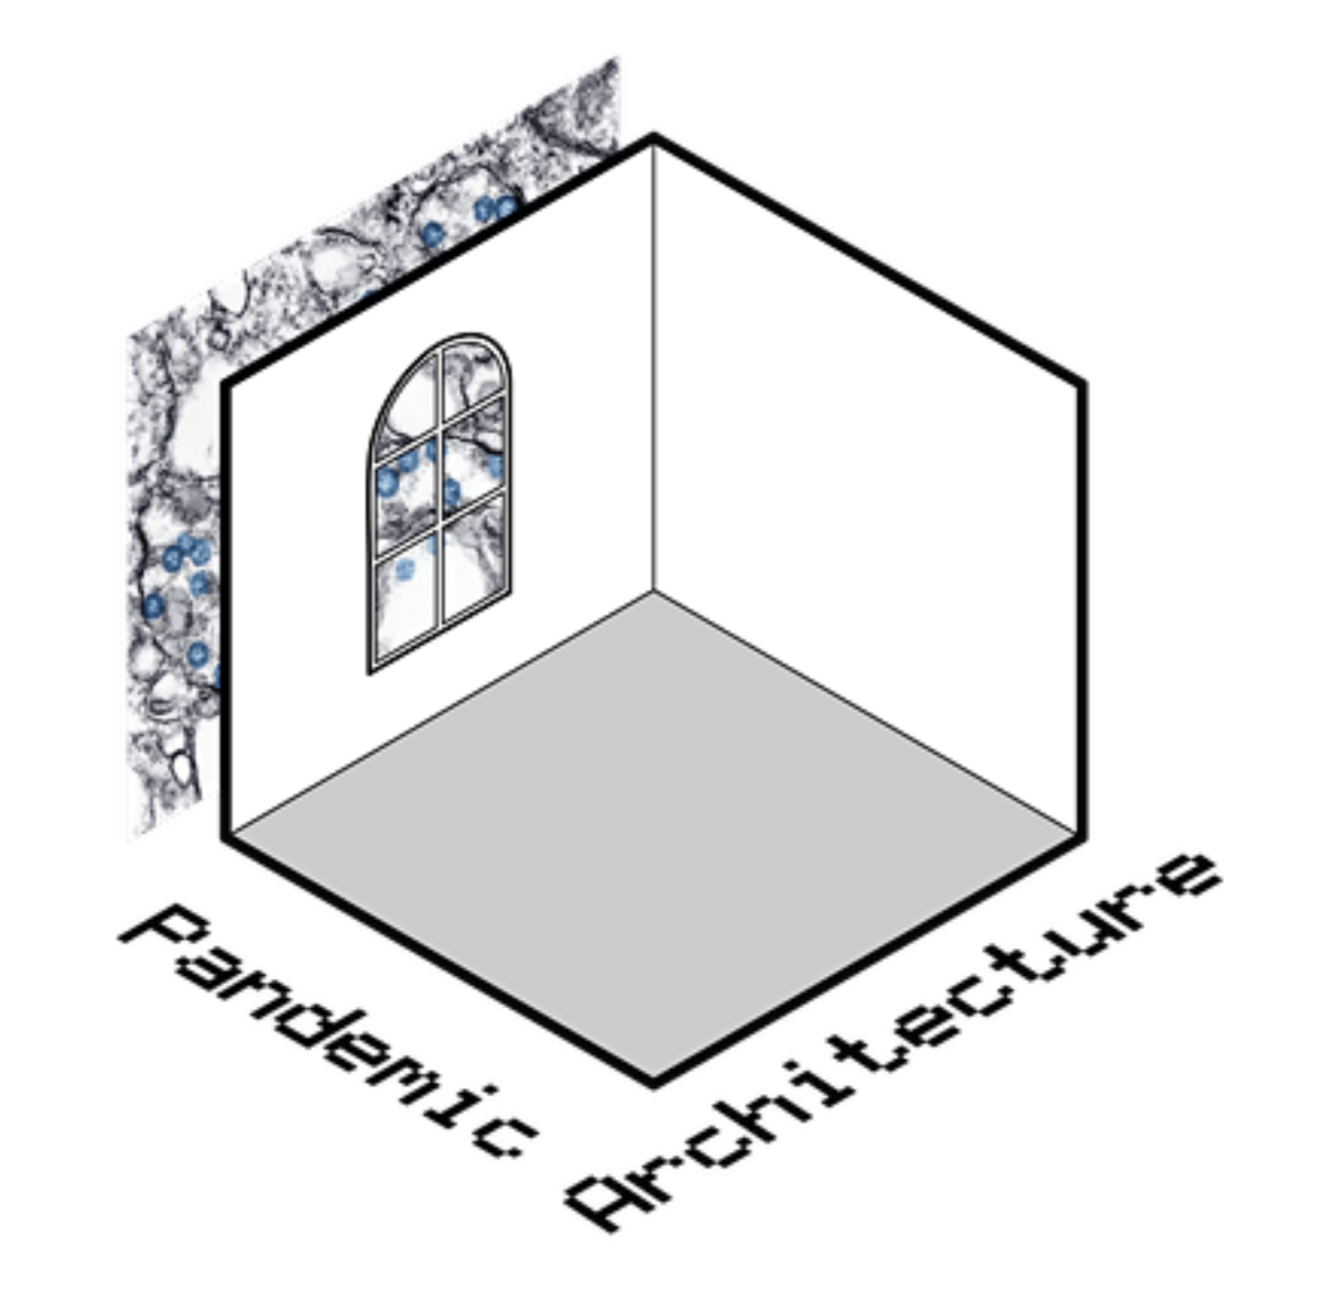 Pandemic Architecture – Virtual Symposium